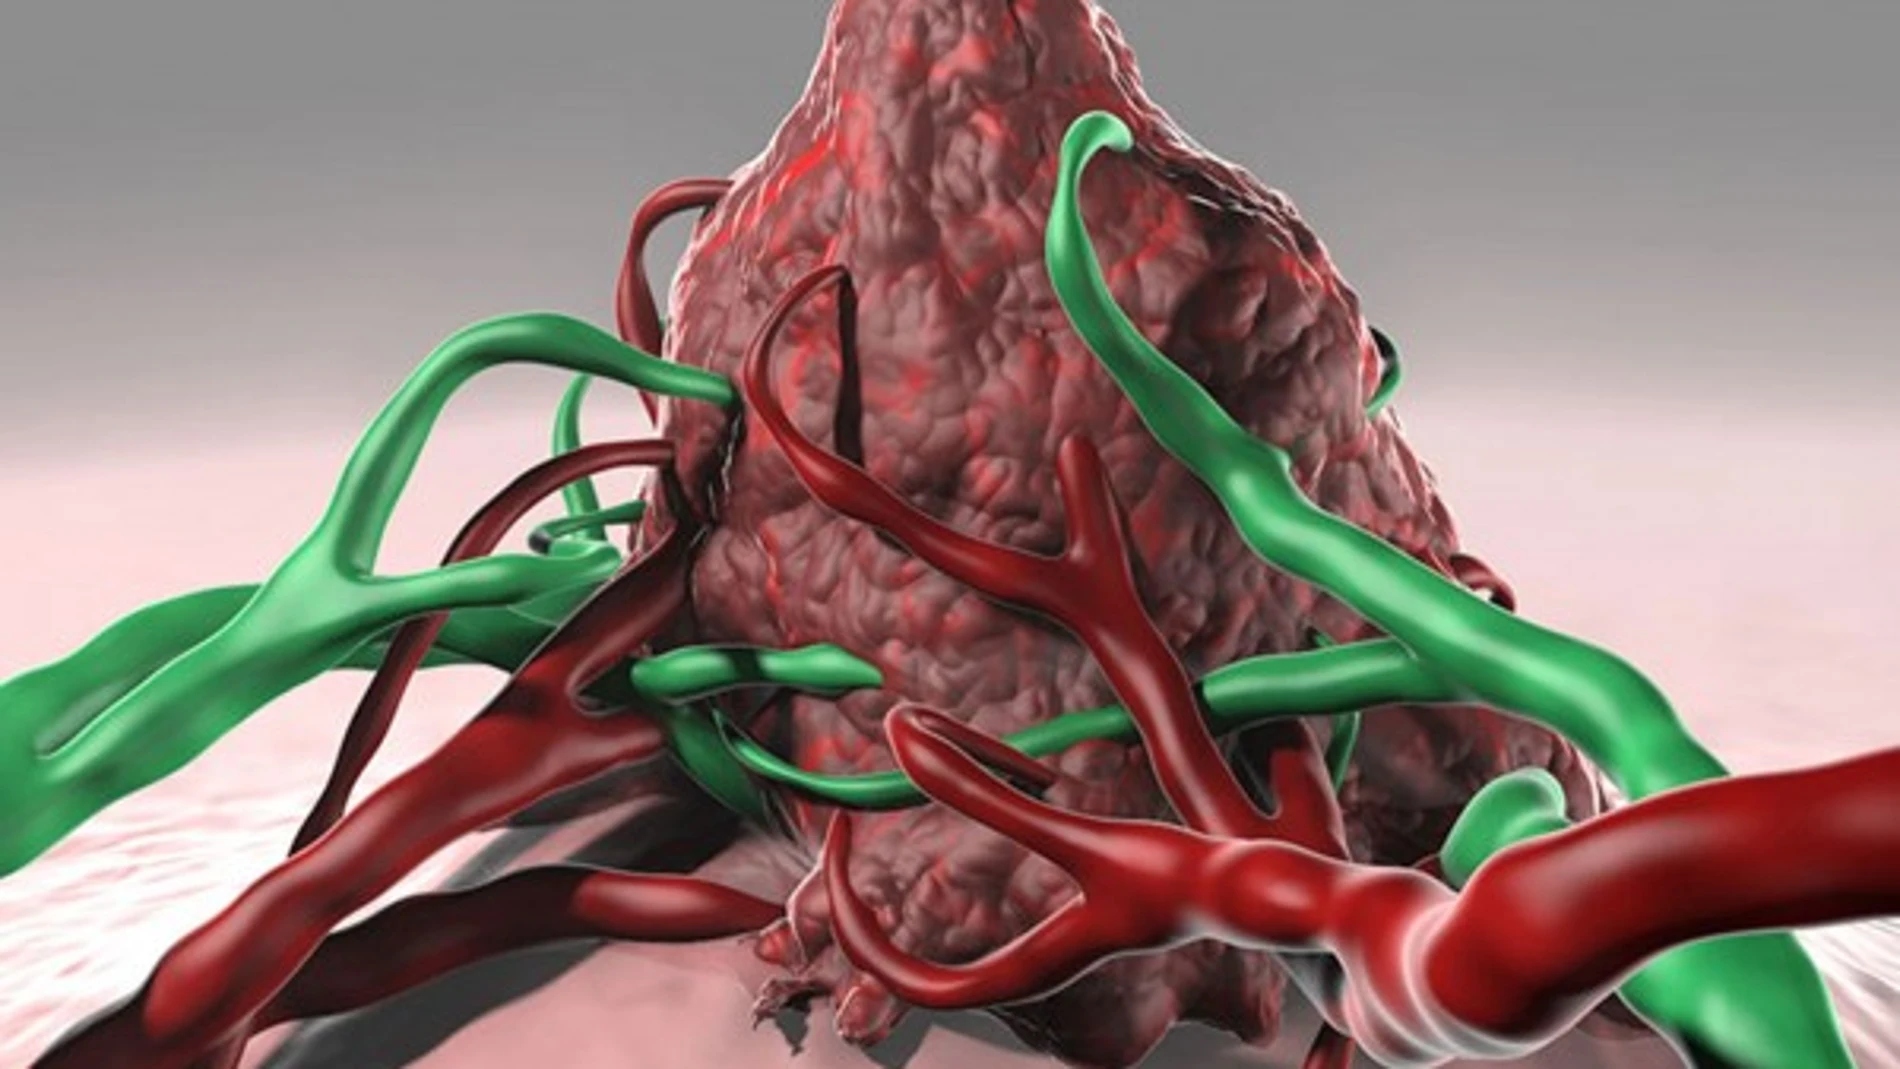 Representación artística de un tumor rodeado por vasos sanguíneos i linfáticos